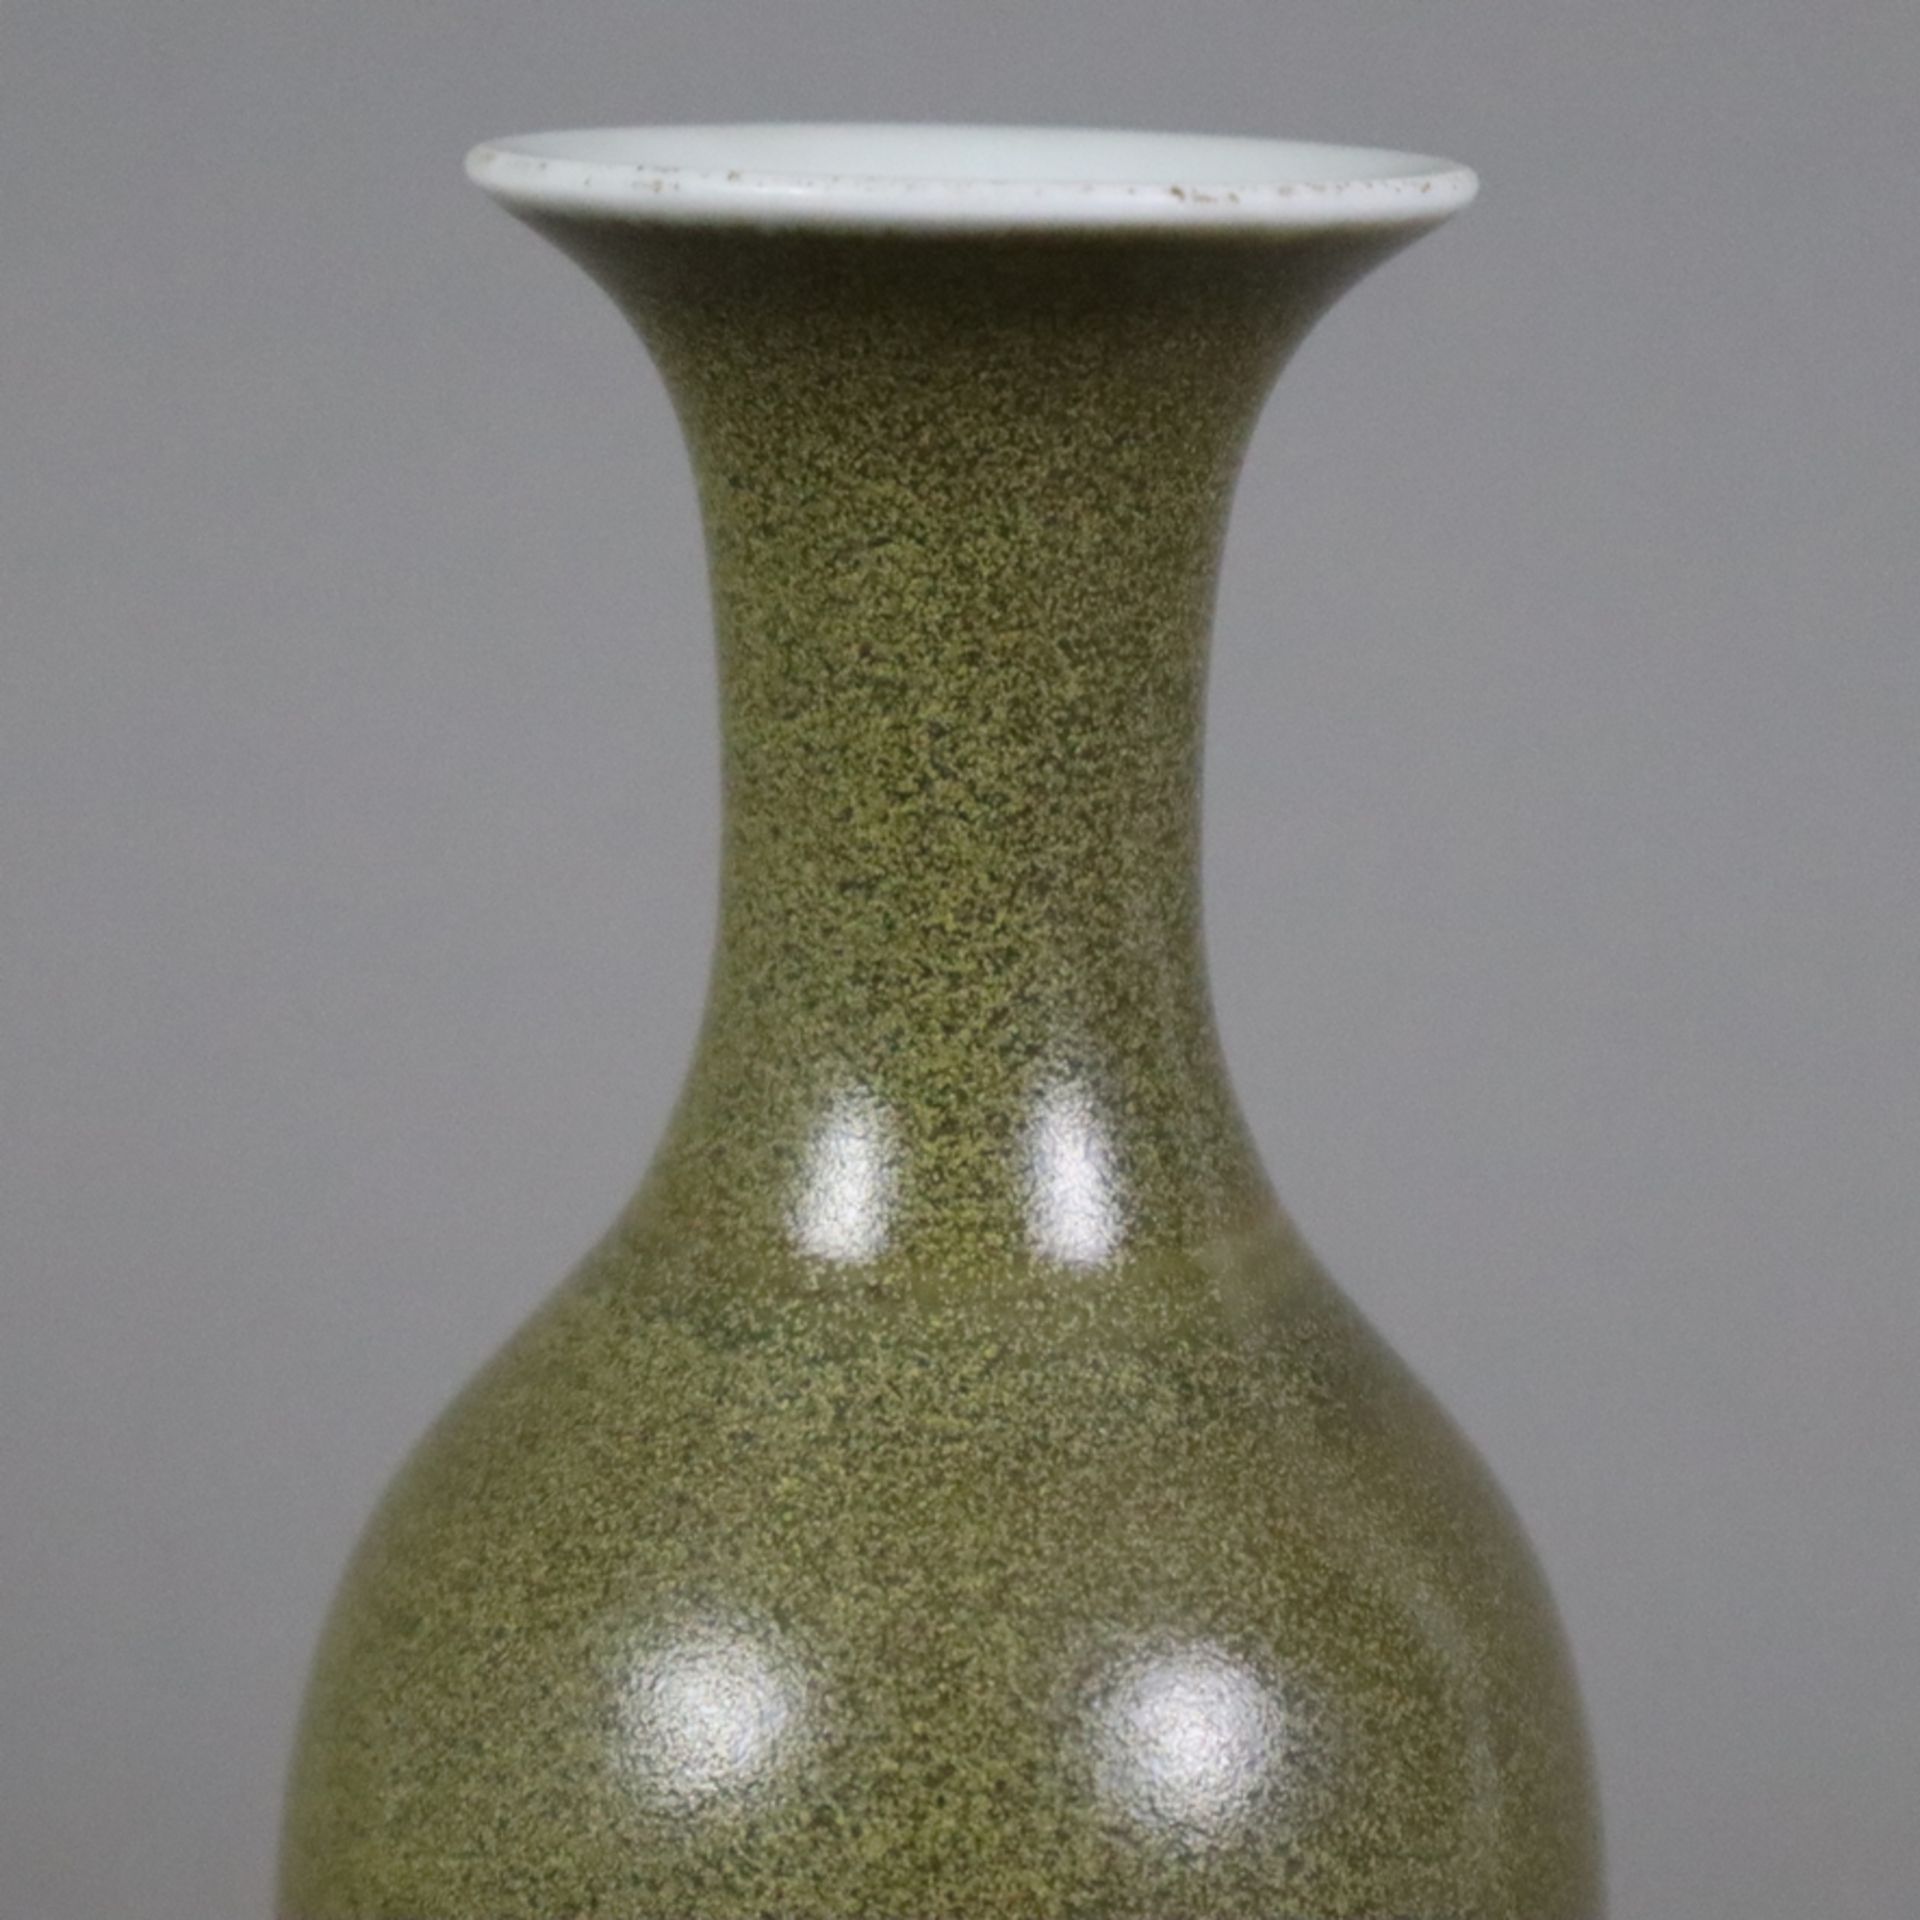 Kleine Flaschenvase - China 20.Jh., Porzellan mit "Teedust"-Glasur, innen und unterseitig transpare - Bild 3 aus 7